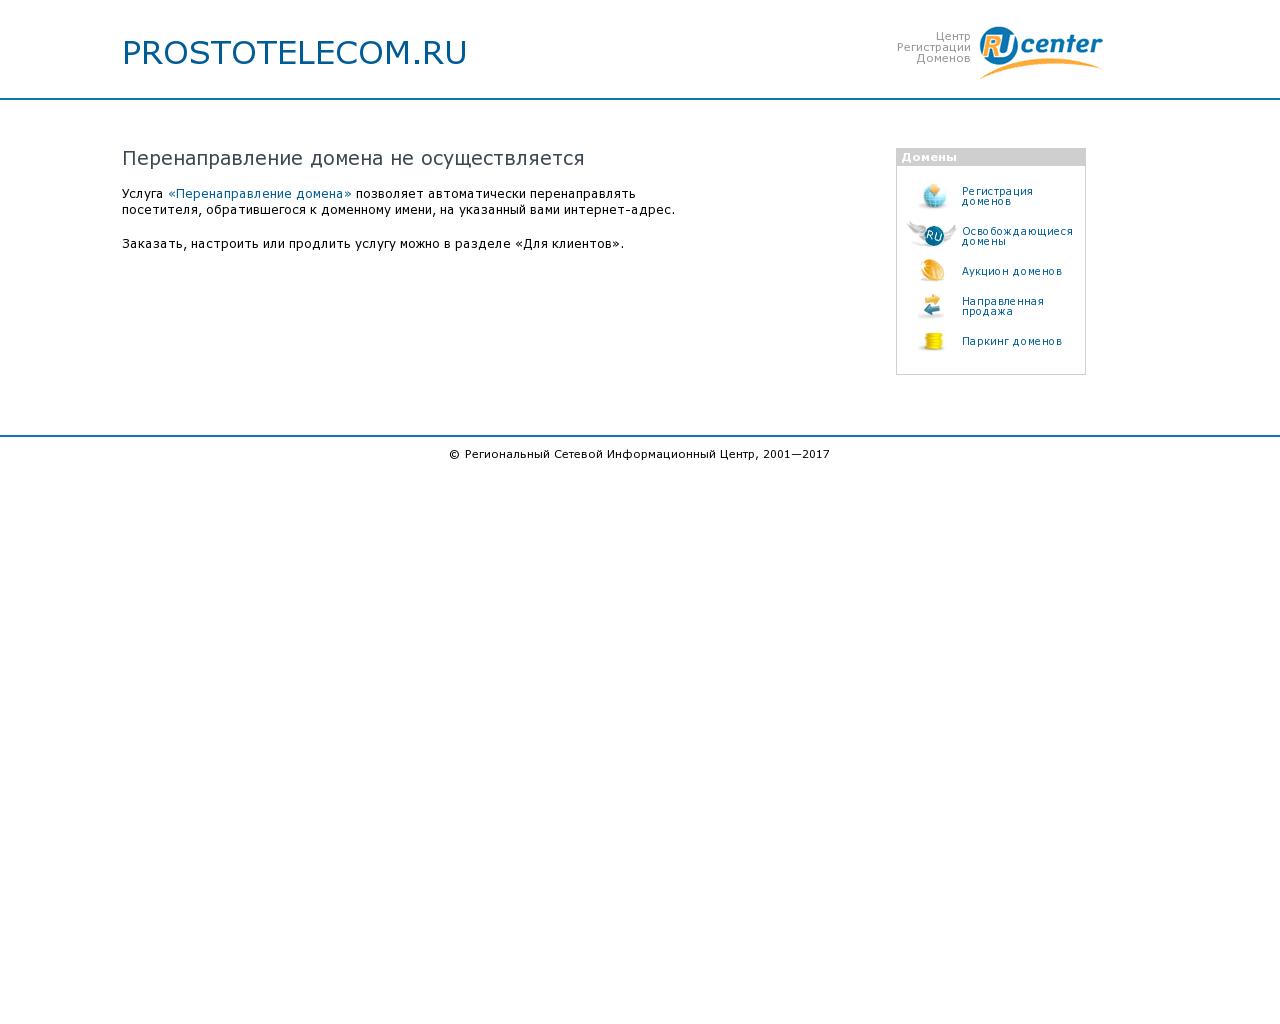 Изображение сайта prostotelecom.ru в разрешении 1280x1024